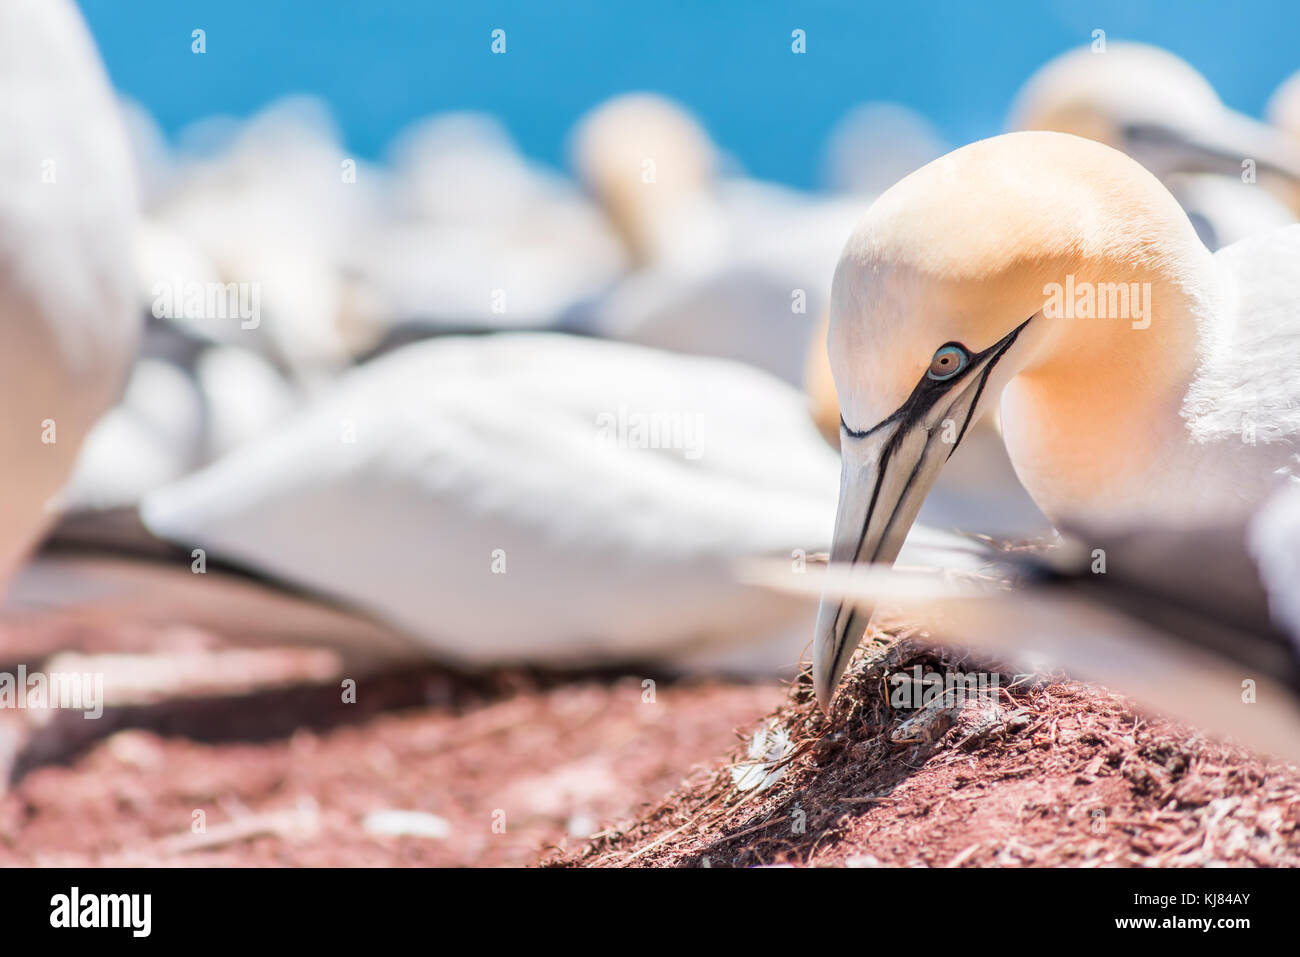 Extreme Nahaufnahme von Gannett vogel Gesicht Kopf mit blauen Augen thront im Nest auf dem Boden auf die Insel Bonaventure in Quebec, Kanada, Gaspesie, Gaspe region Stockfoto